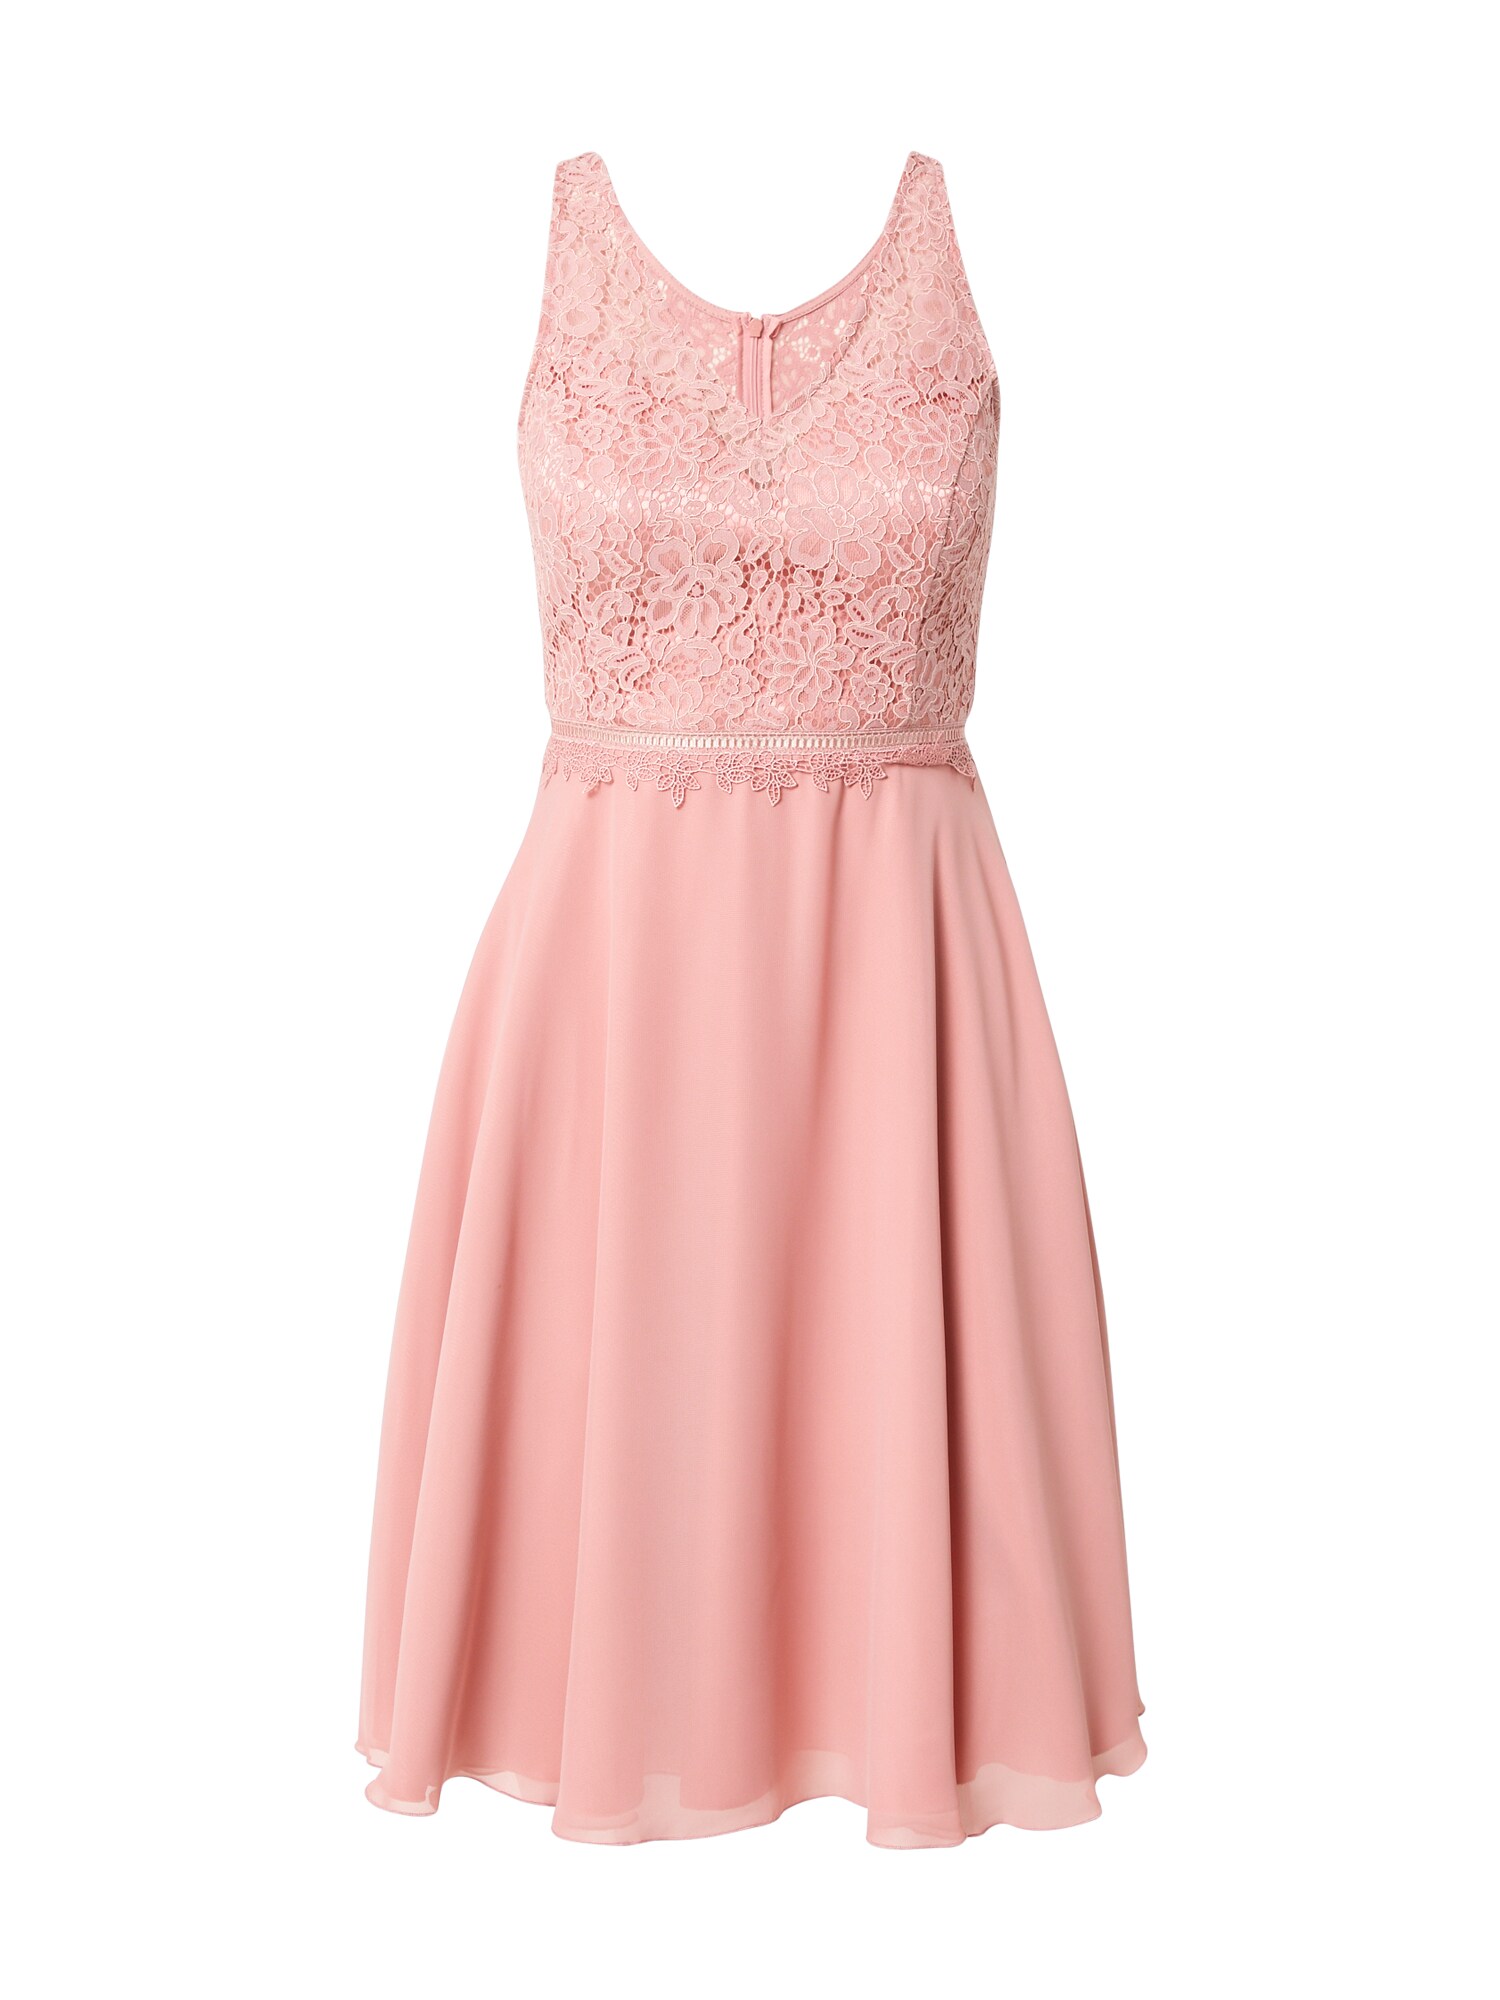 SUDDENLY princess Kokteilinė suknelė ryškiai rožinė spalva